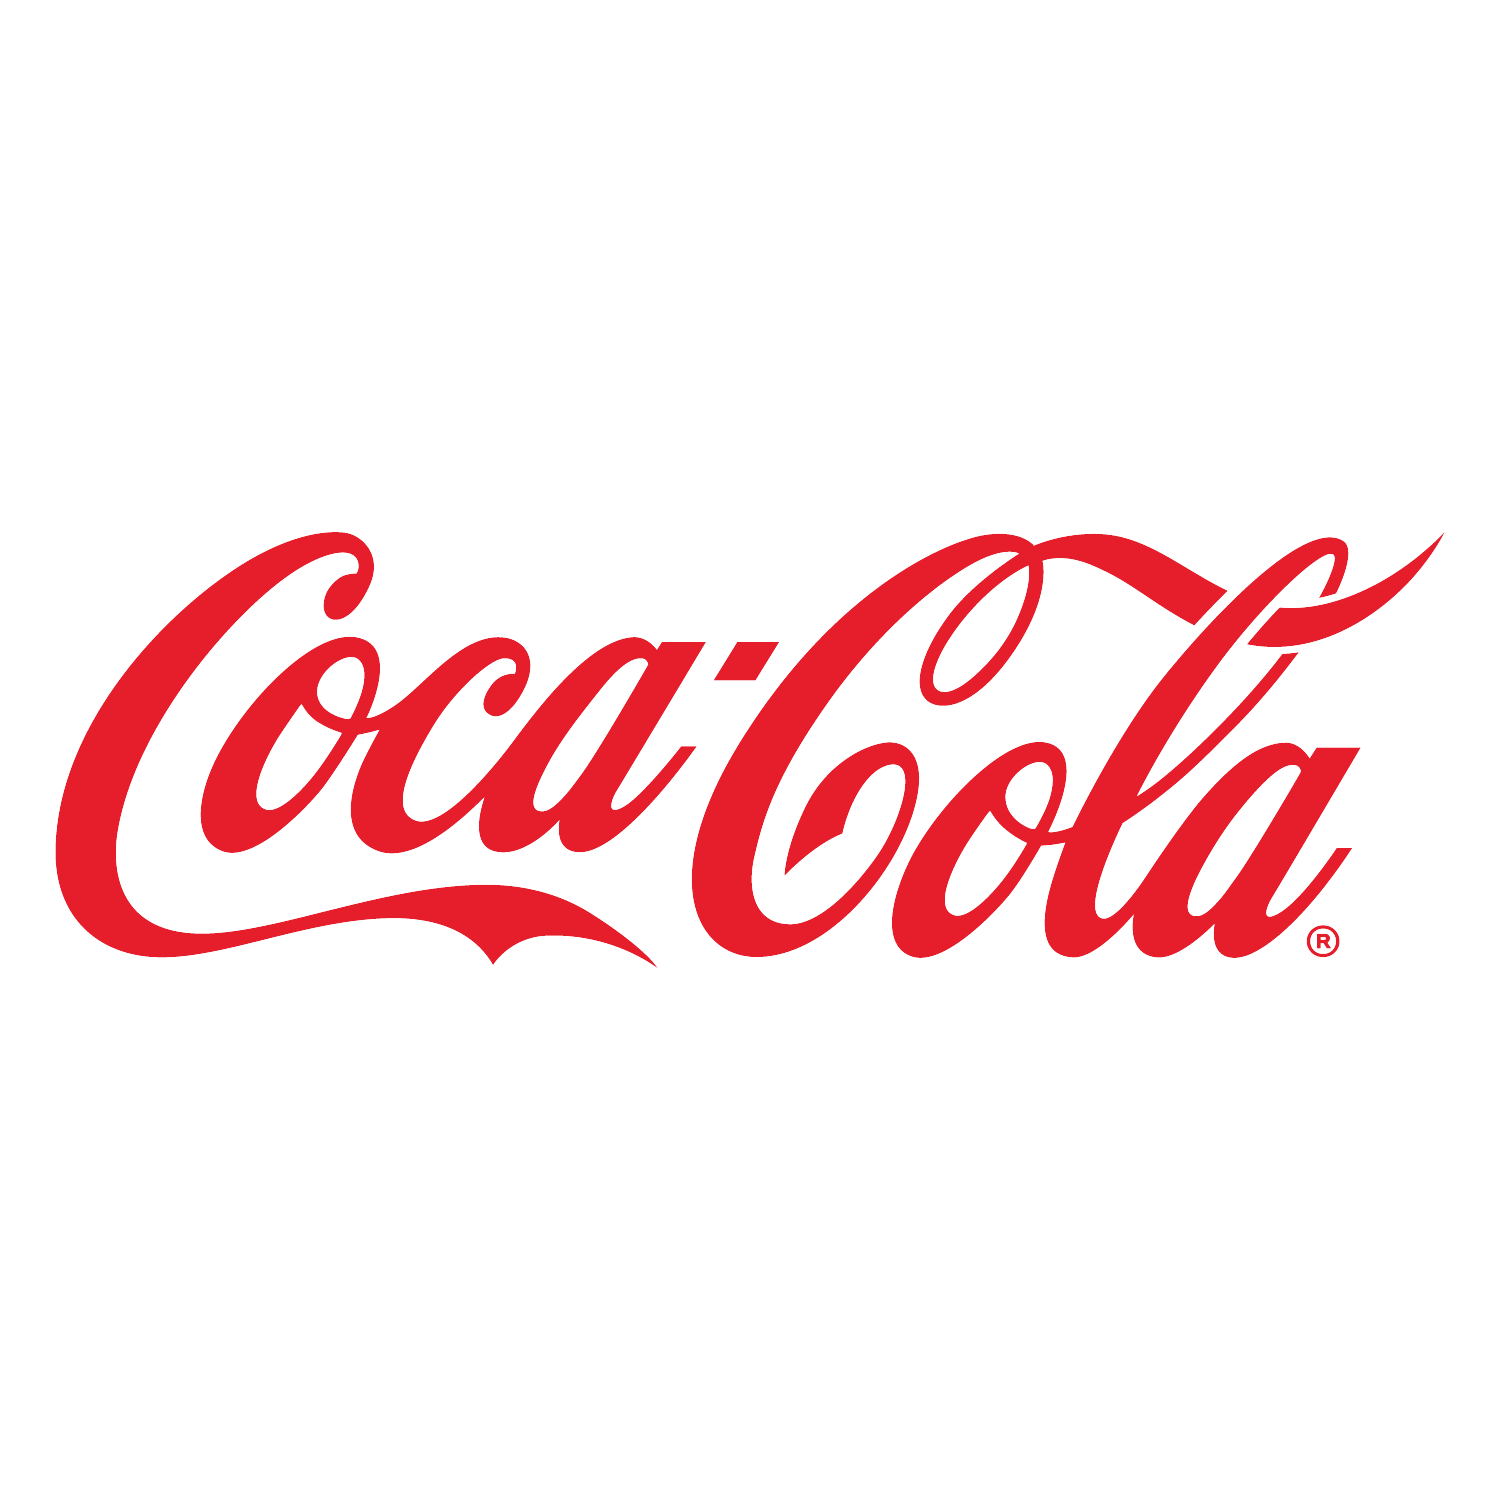 Coke Cola logo